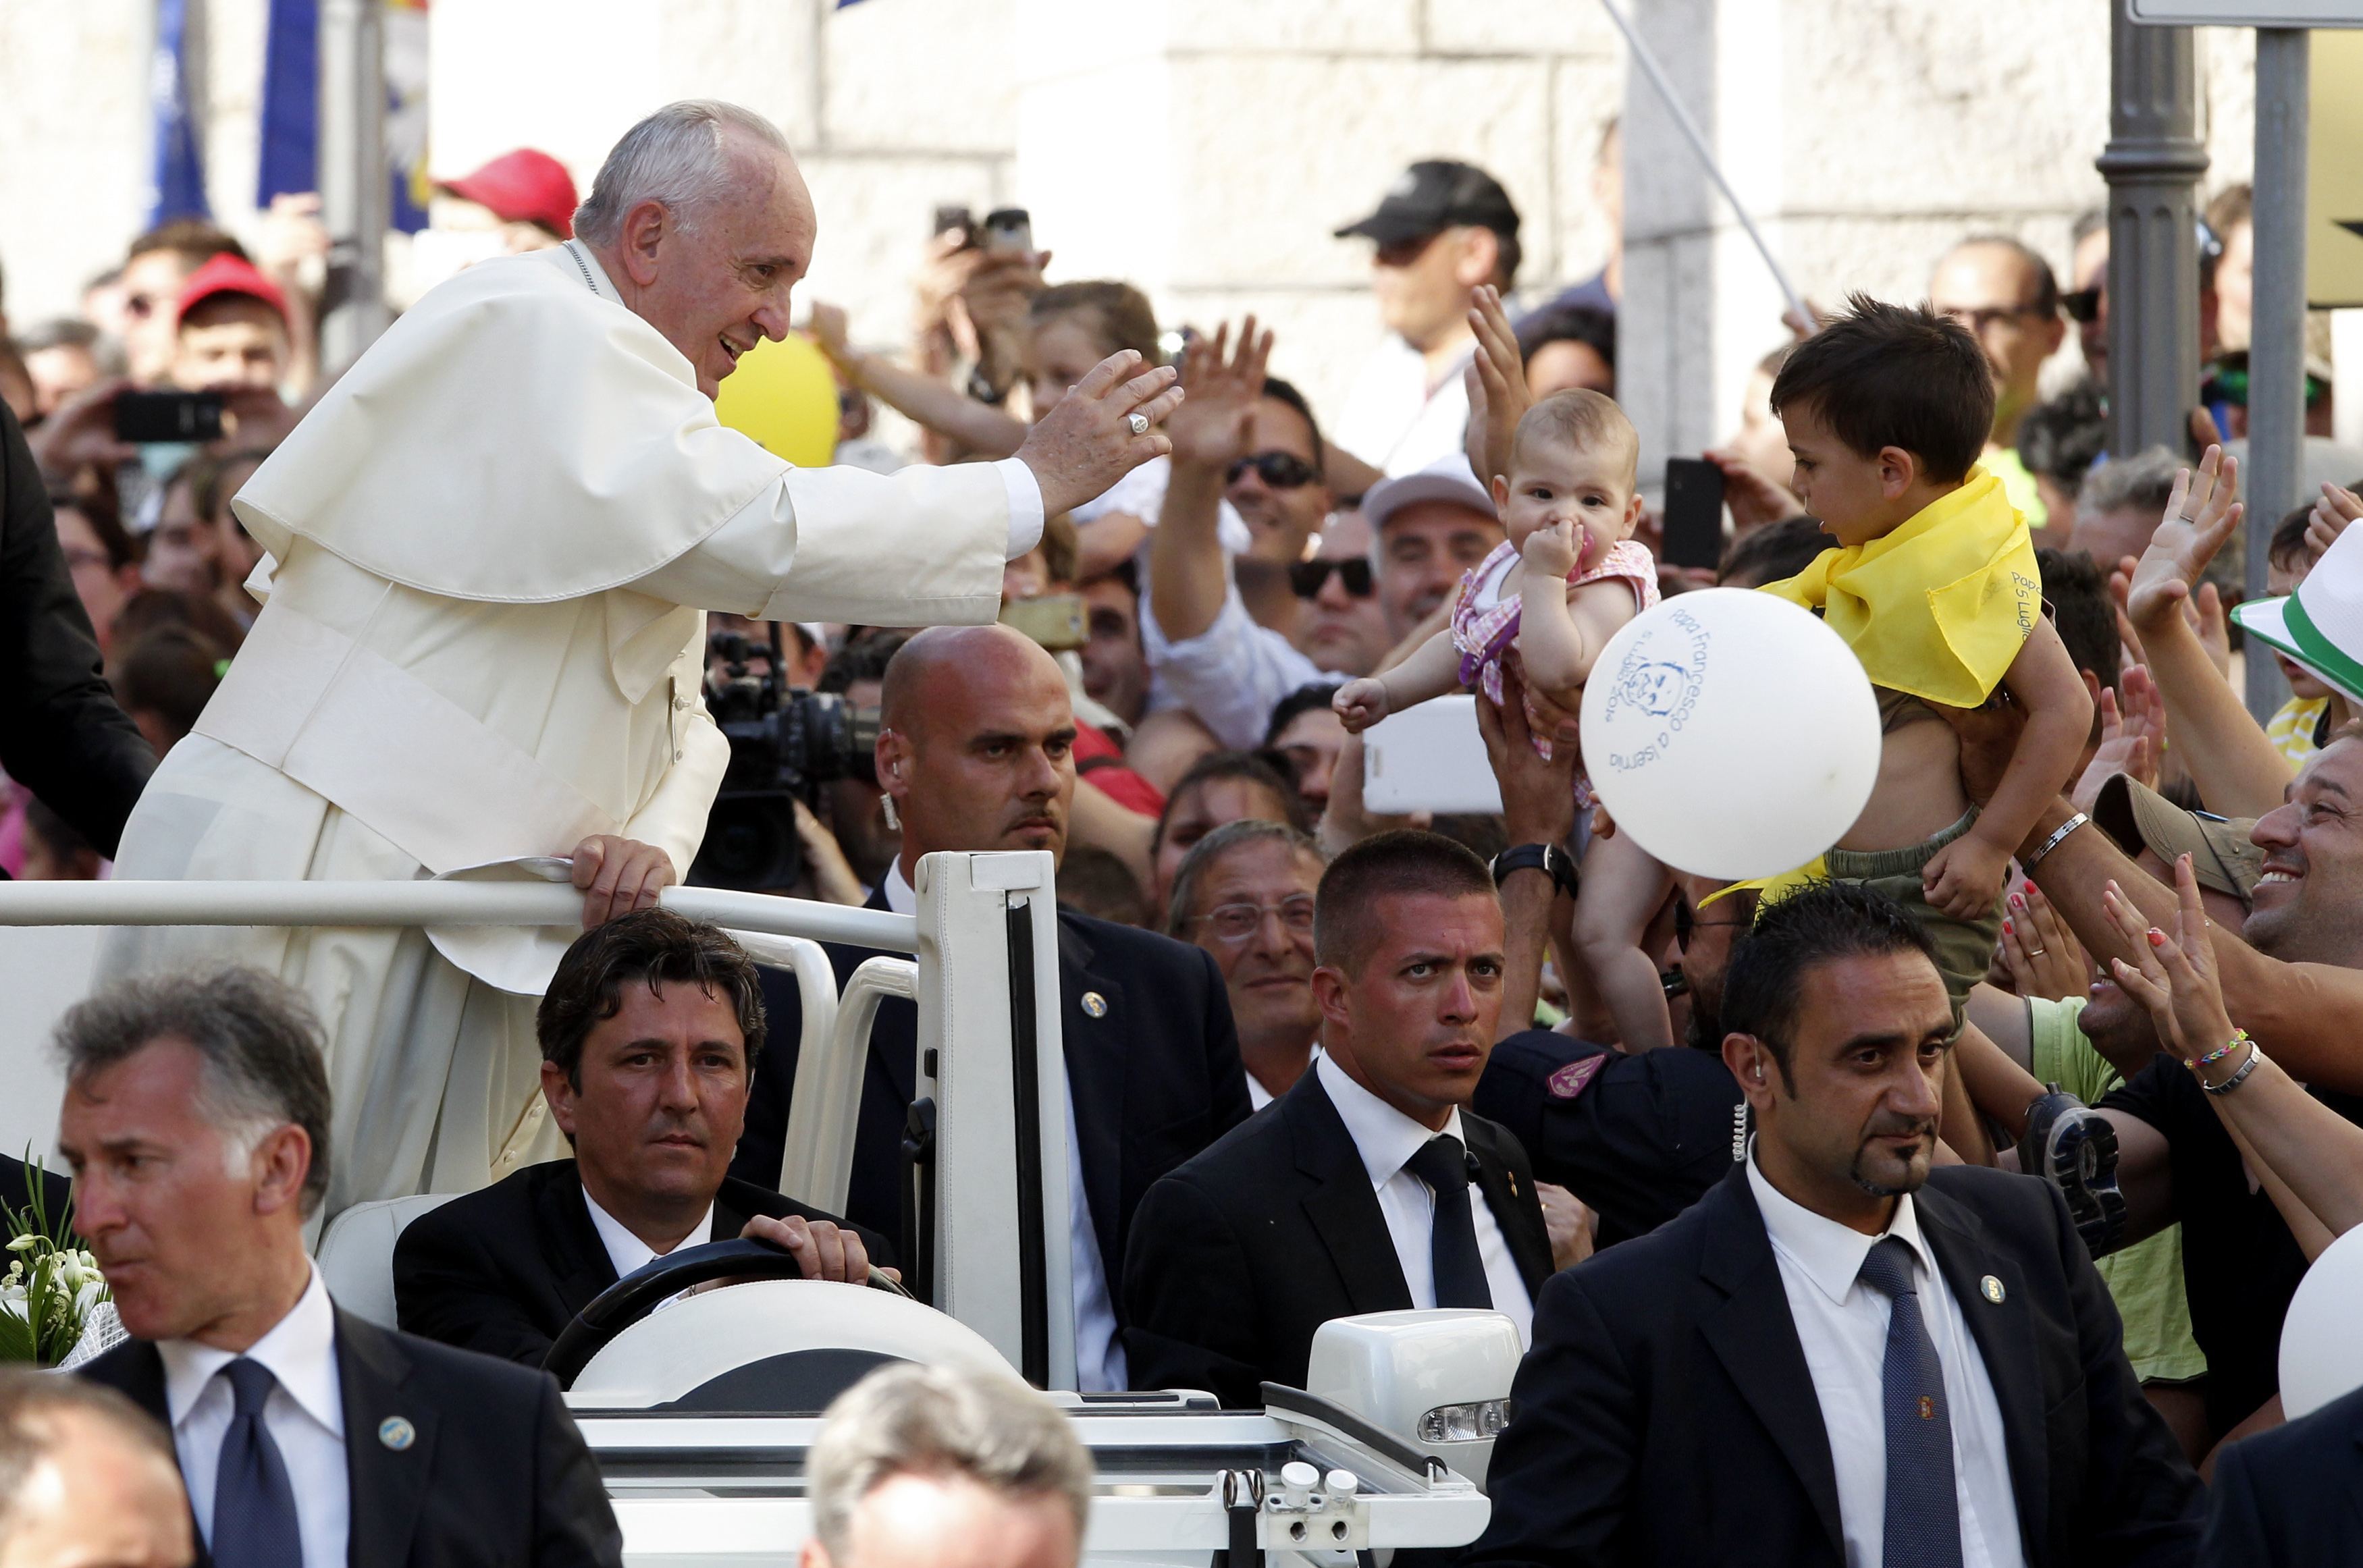 Πάπας Φραγκίσκος: “Η εργασία προσφέρει και αξιοπρέπεια”